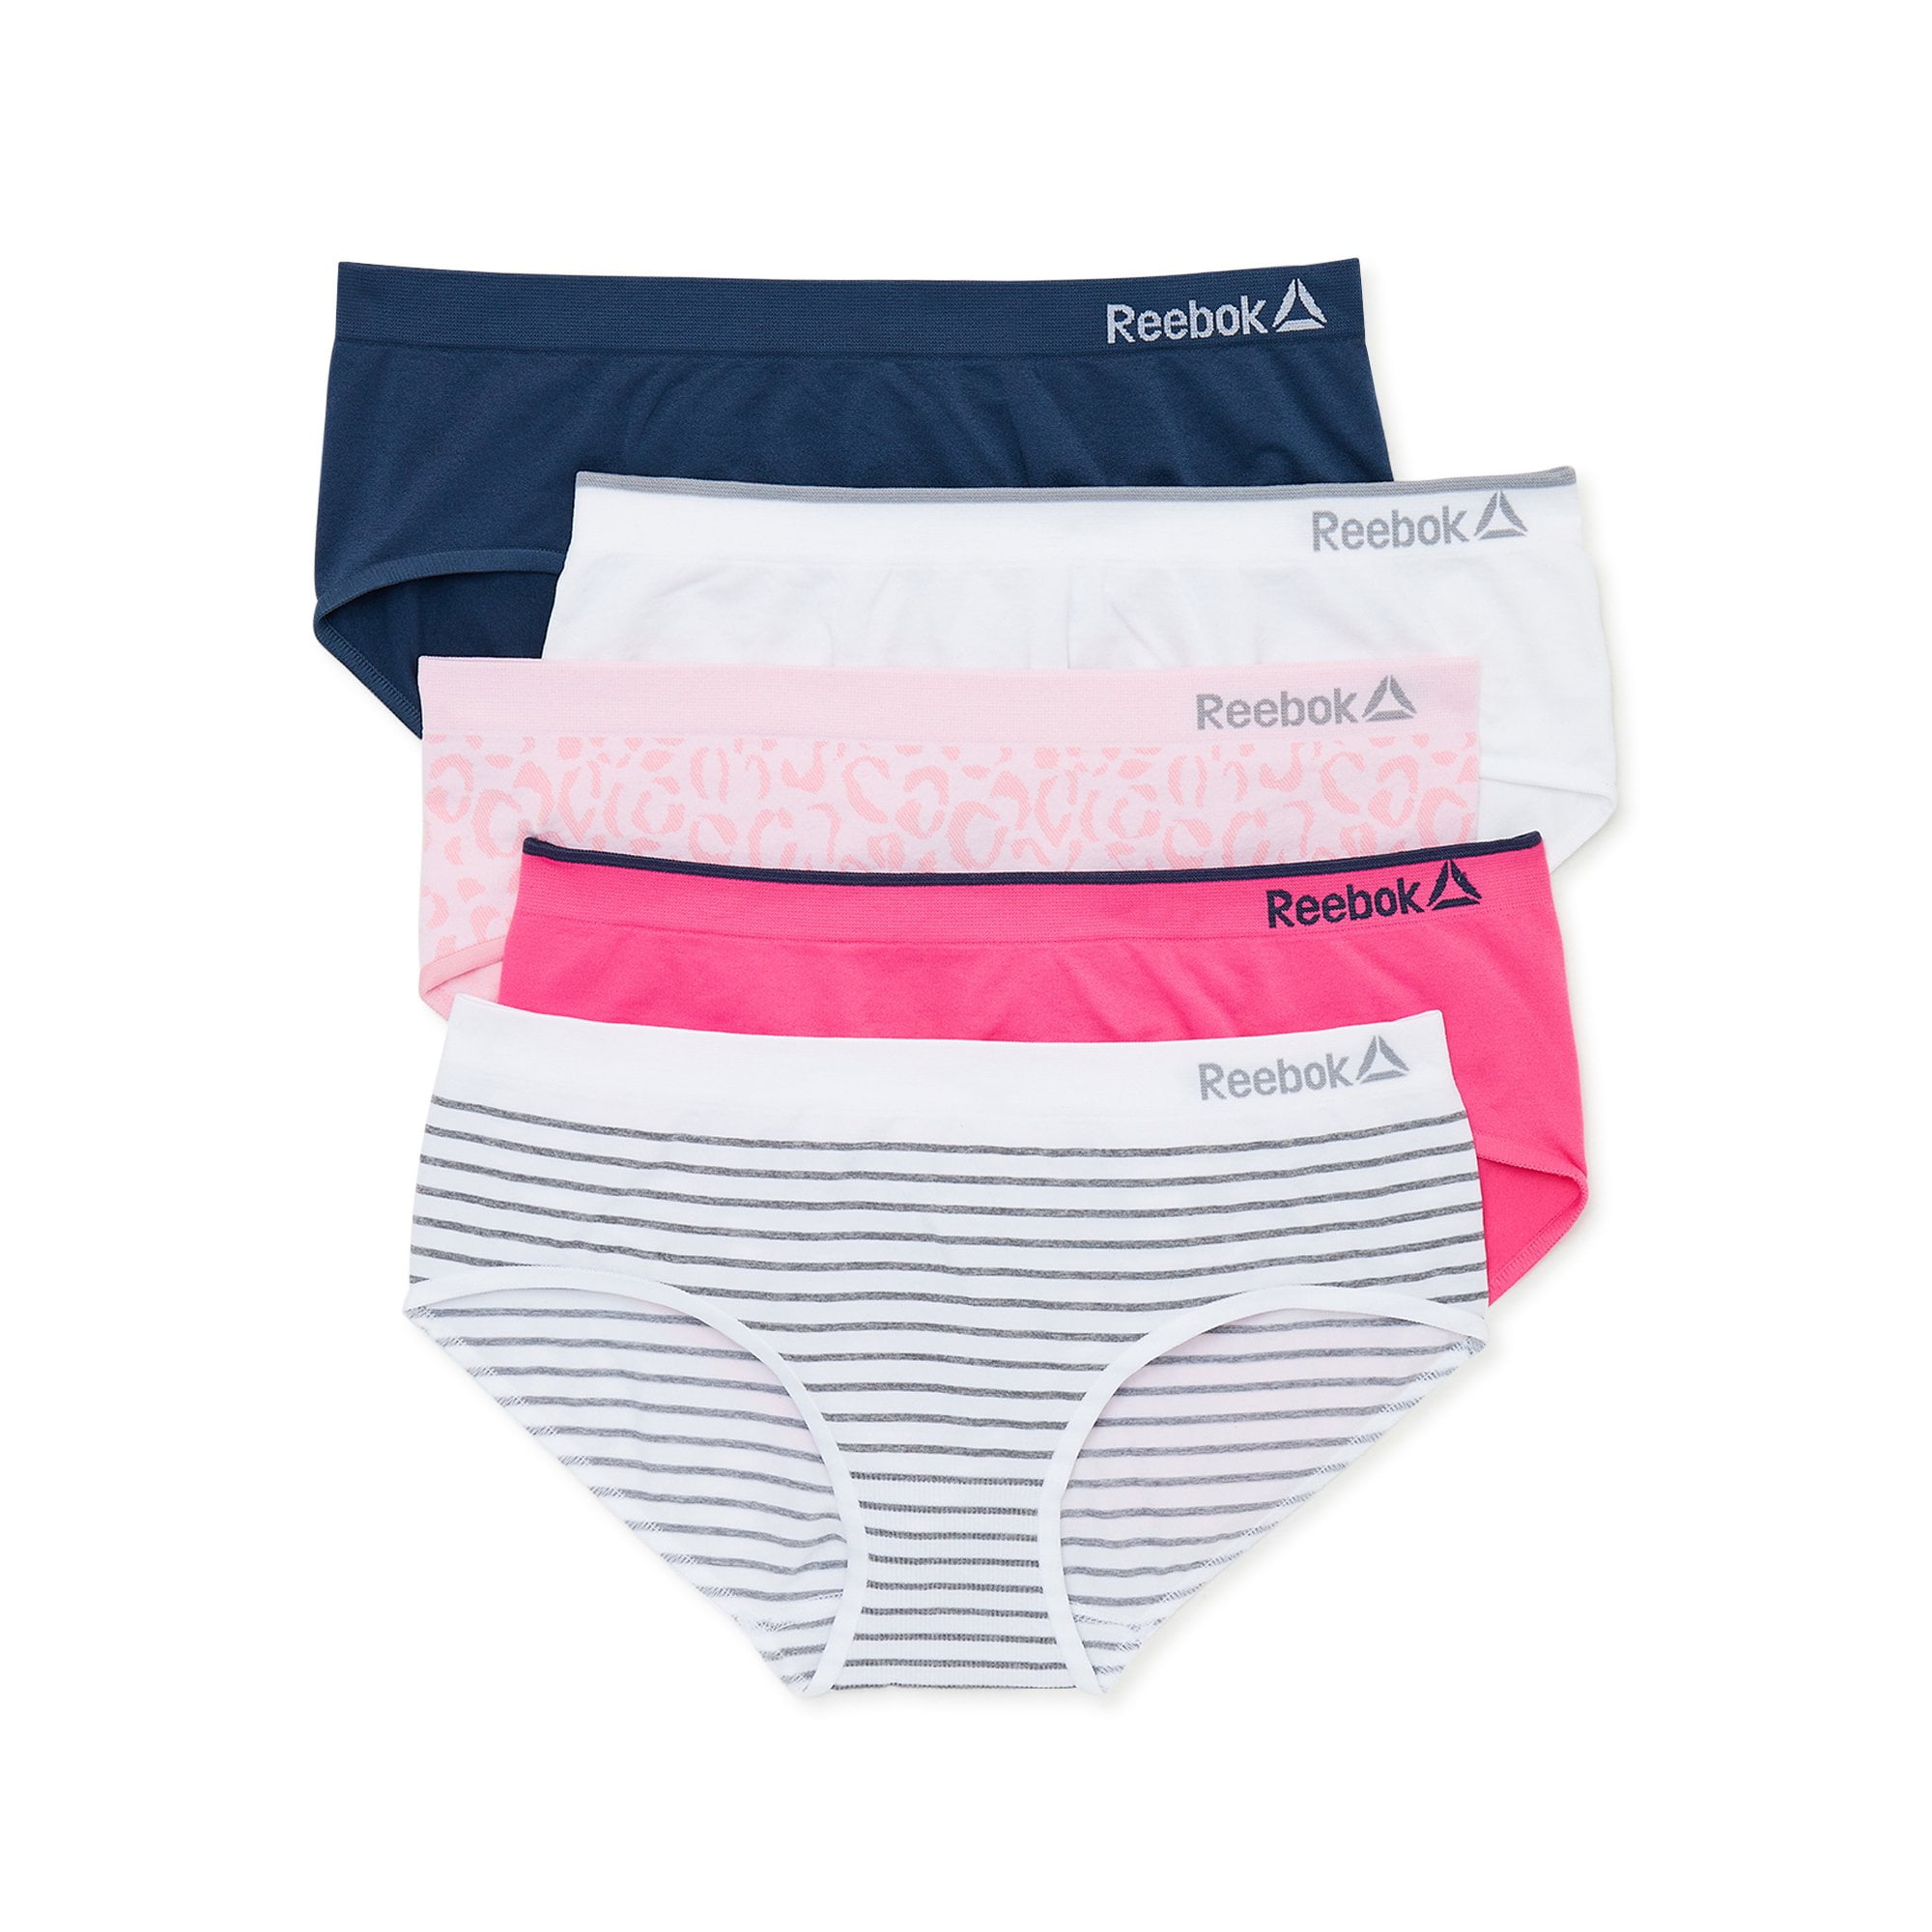 Reebok Women's Underwear – Seamless Hipster Briefs (5 Pack) – Grovano